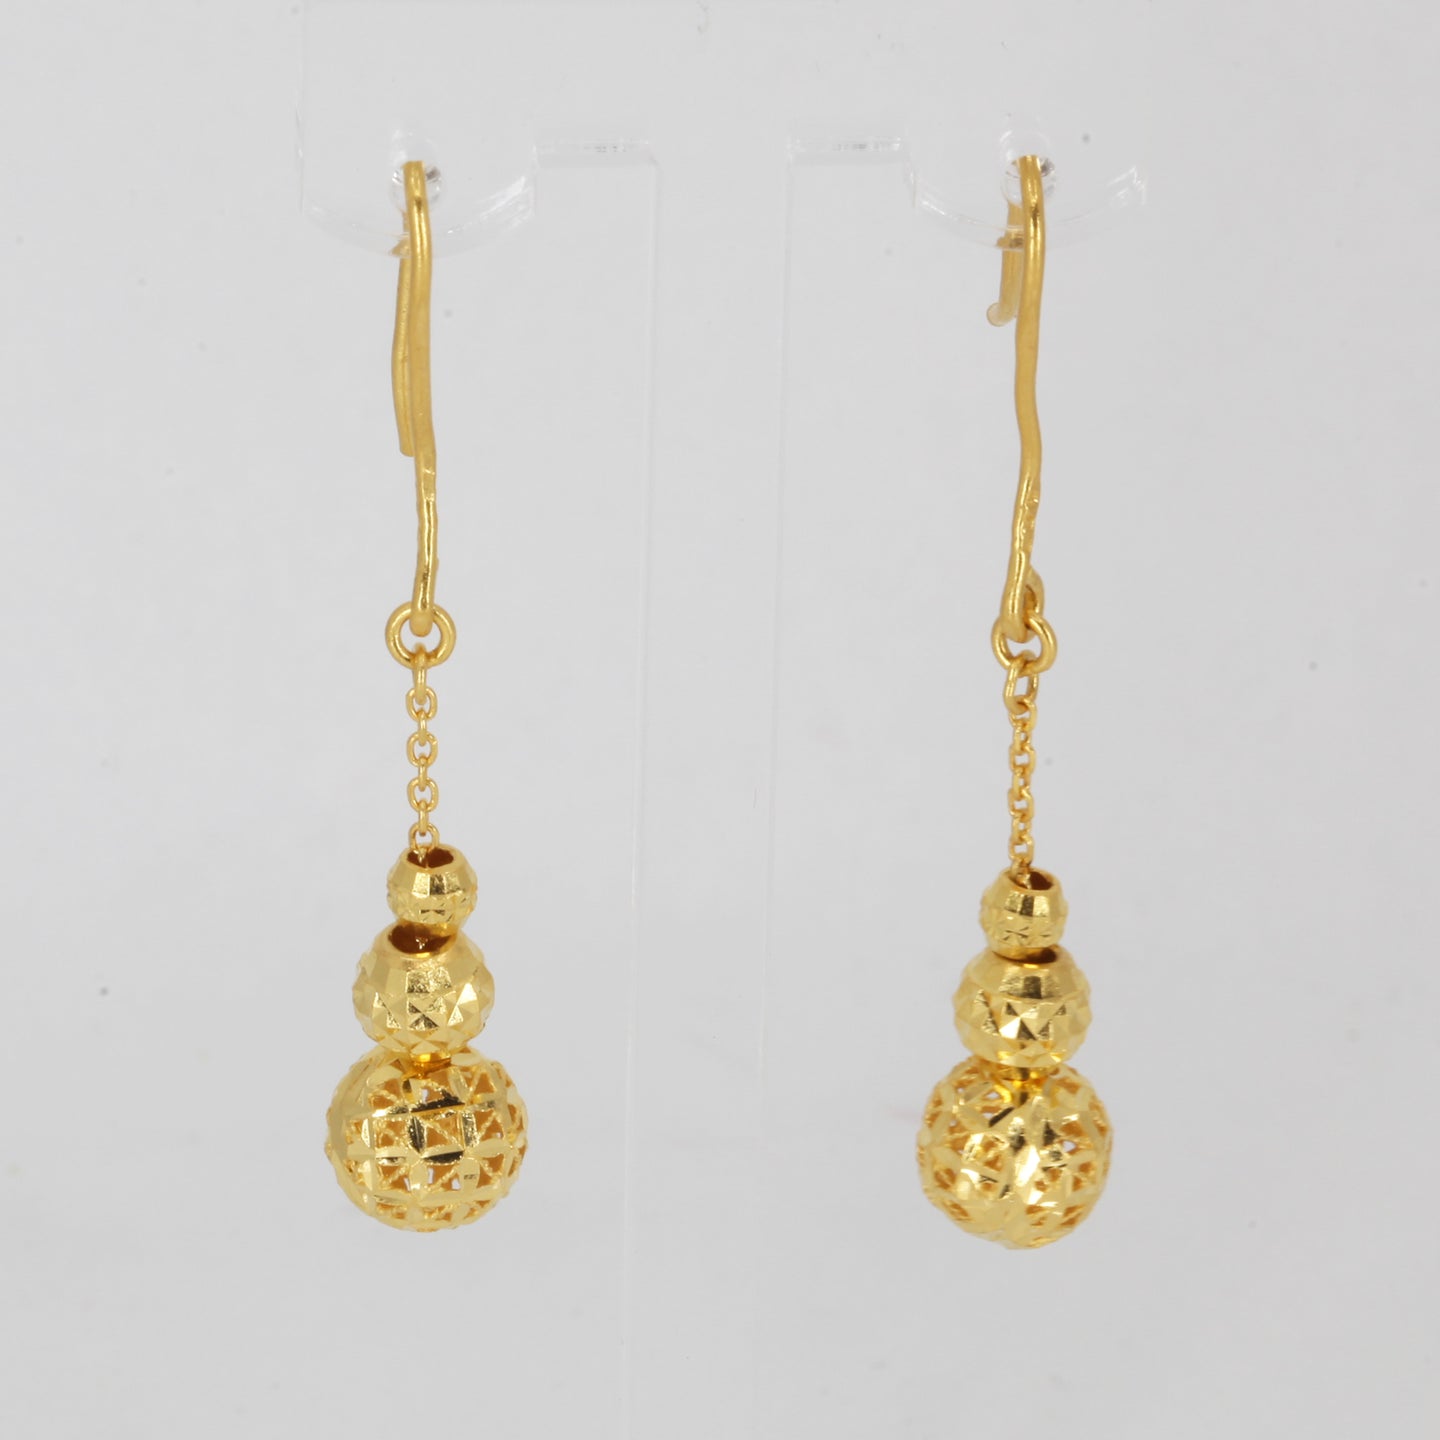 24K Solid Yellow Gold Triple Sphere Hanging Earrings 5.2 Grams